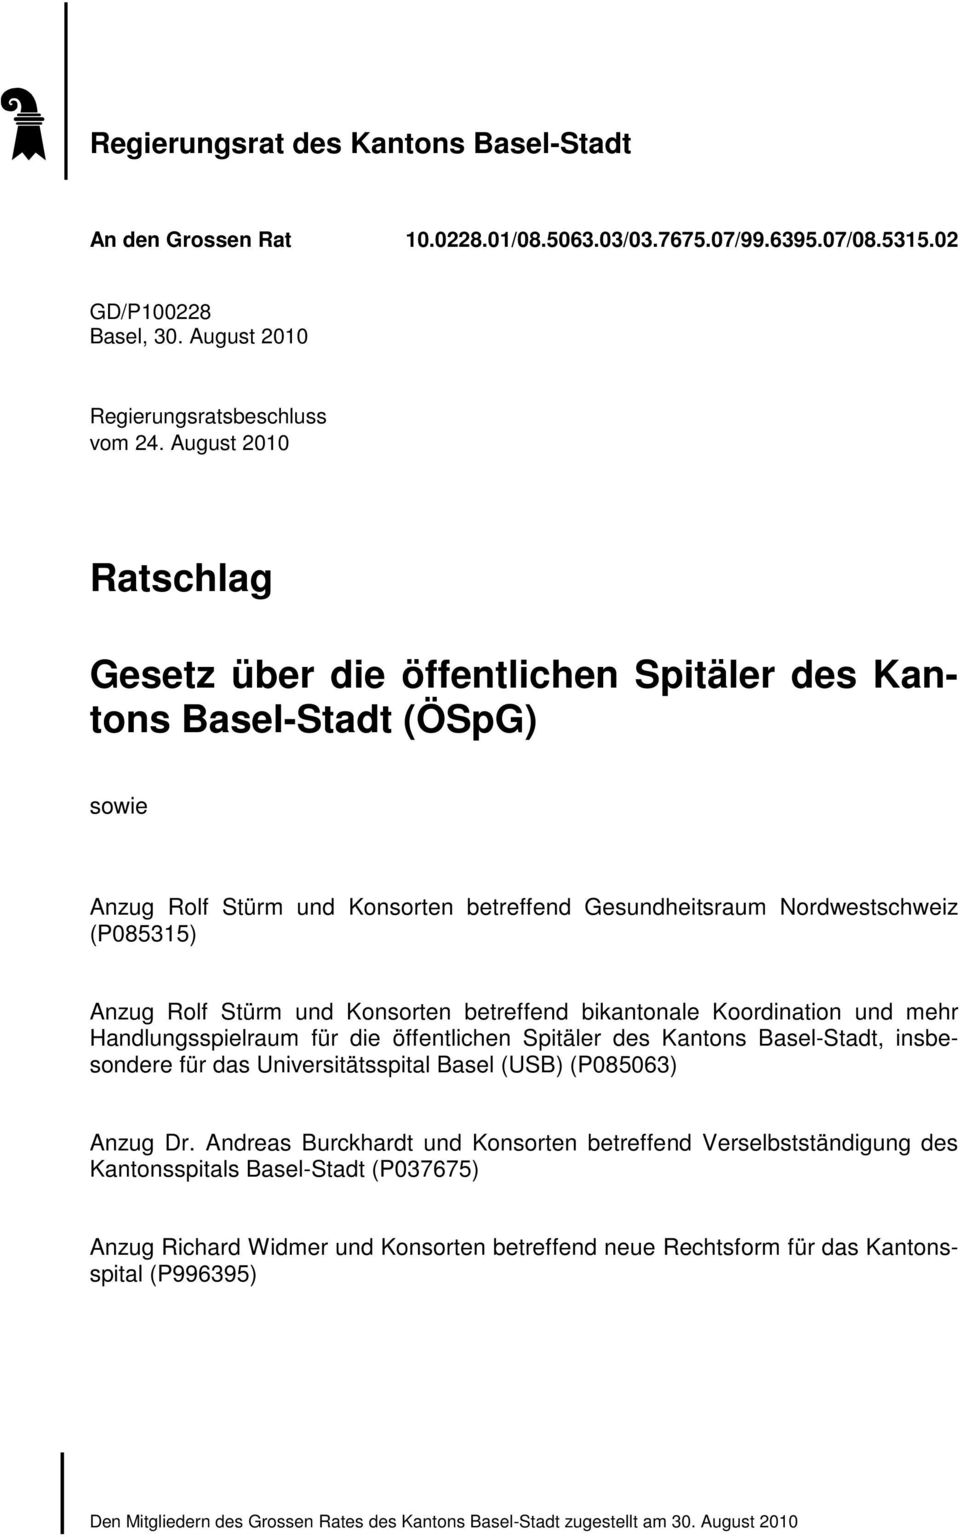 und Konsorten betreffend bikantonale Koordination und mehr Handlungsspielraum für die öffentlichen Spitäler des Kantons Basel-Stadt, insbesondere für das Universitätsspital Basel (USB) (P085063)